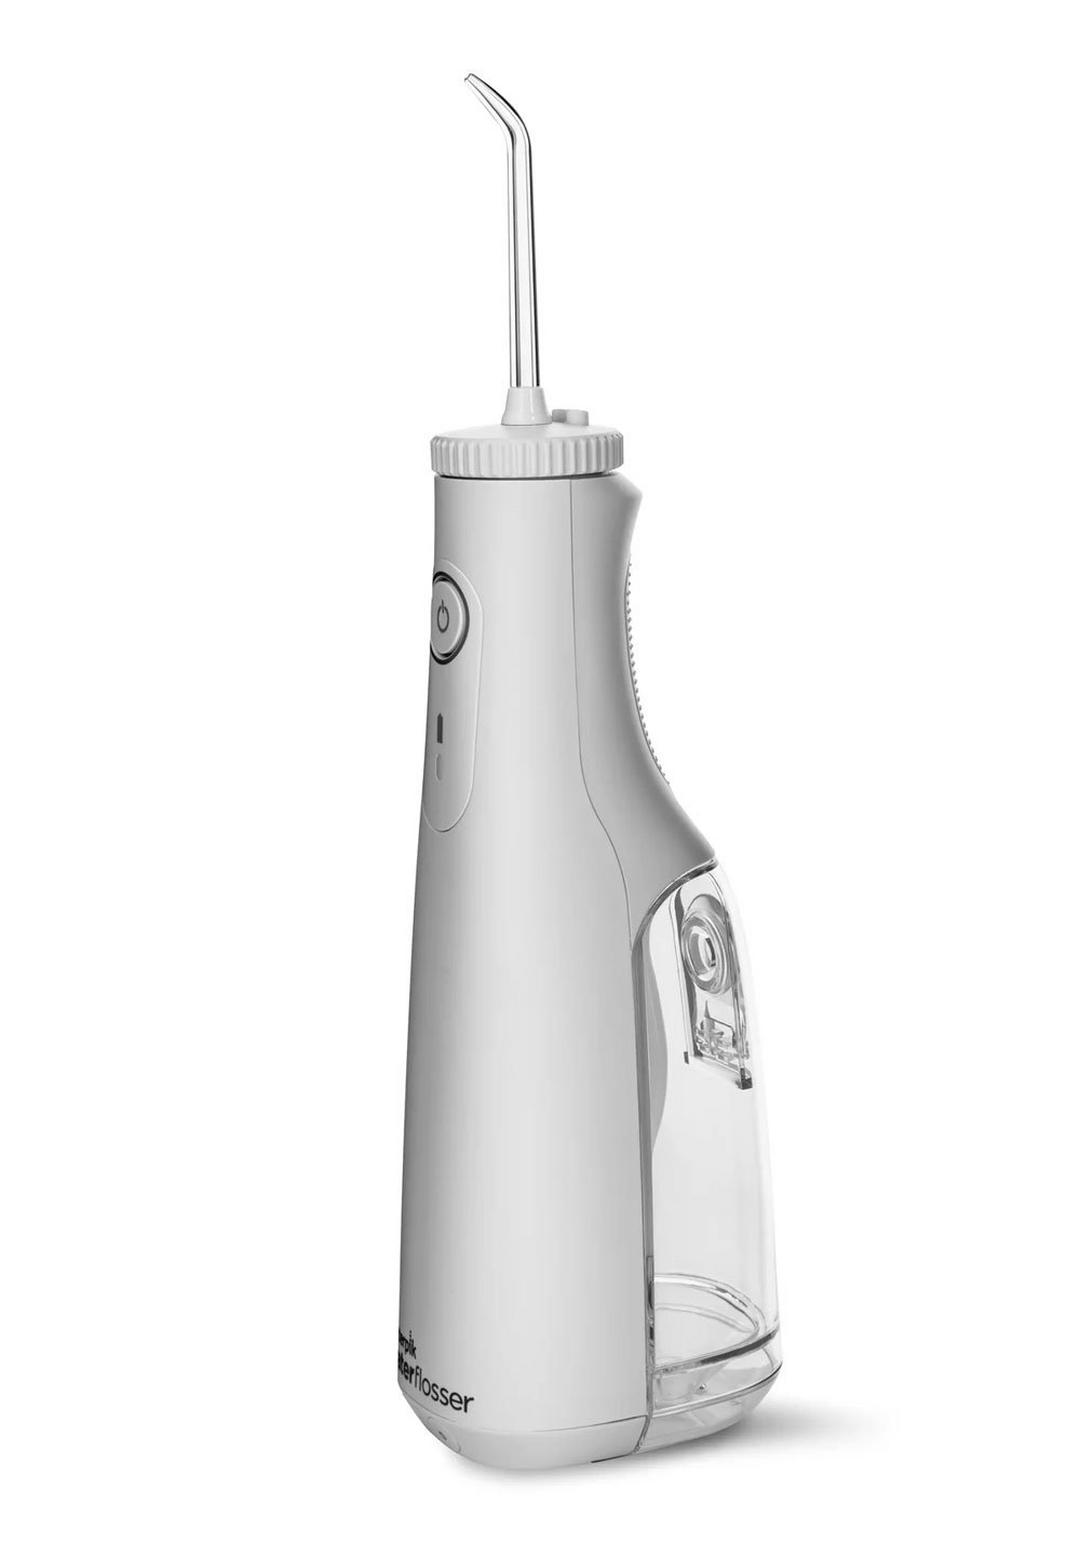 مضخة تنظيف الأسنان بالماء سيلكت لاسلكية من واتربك WF-10ME010 - أبيض